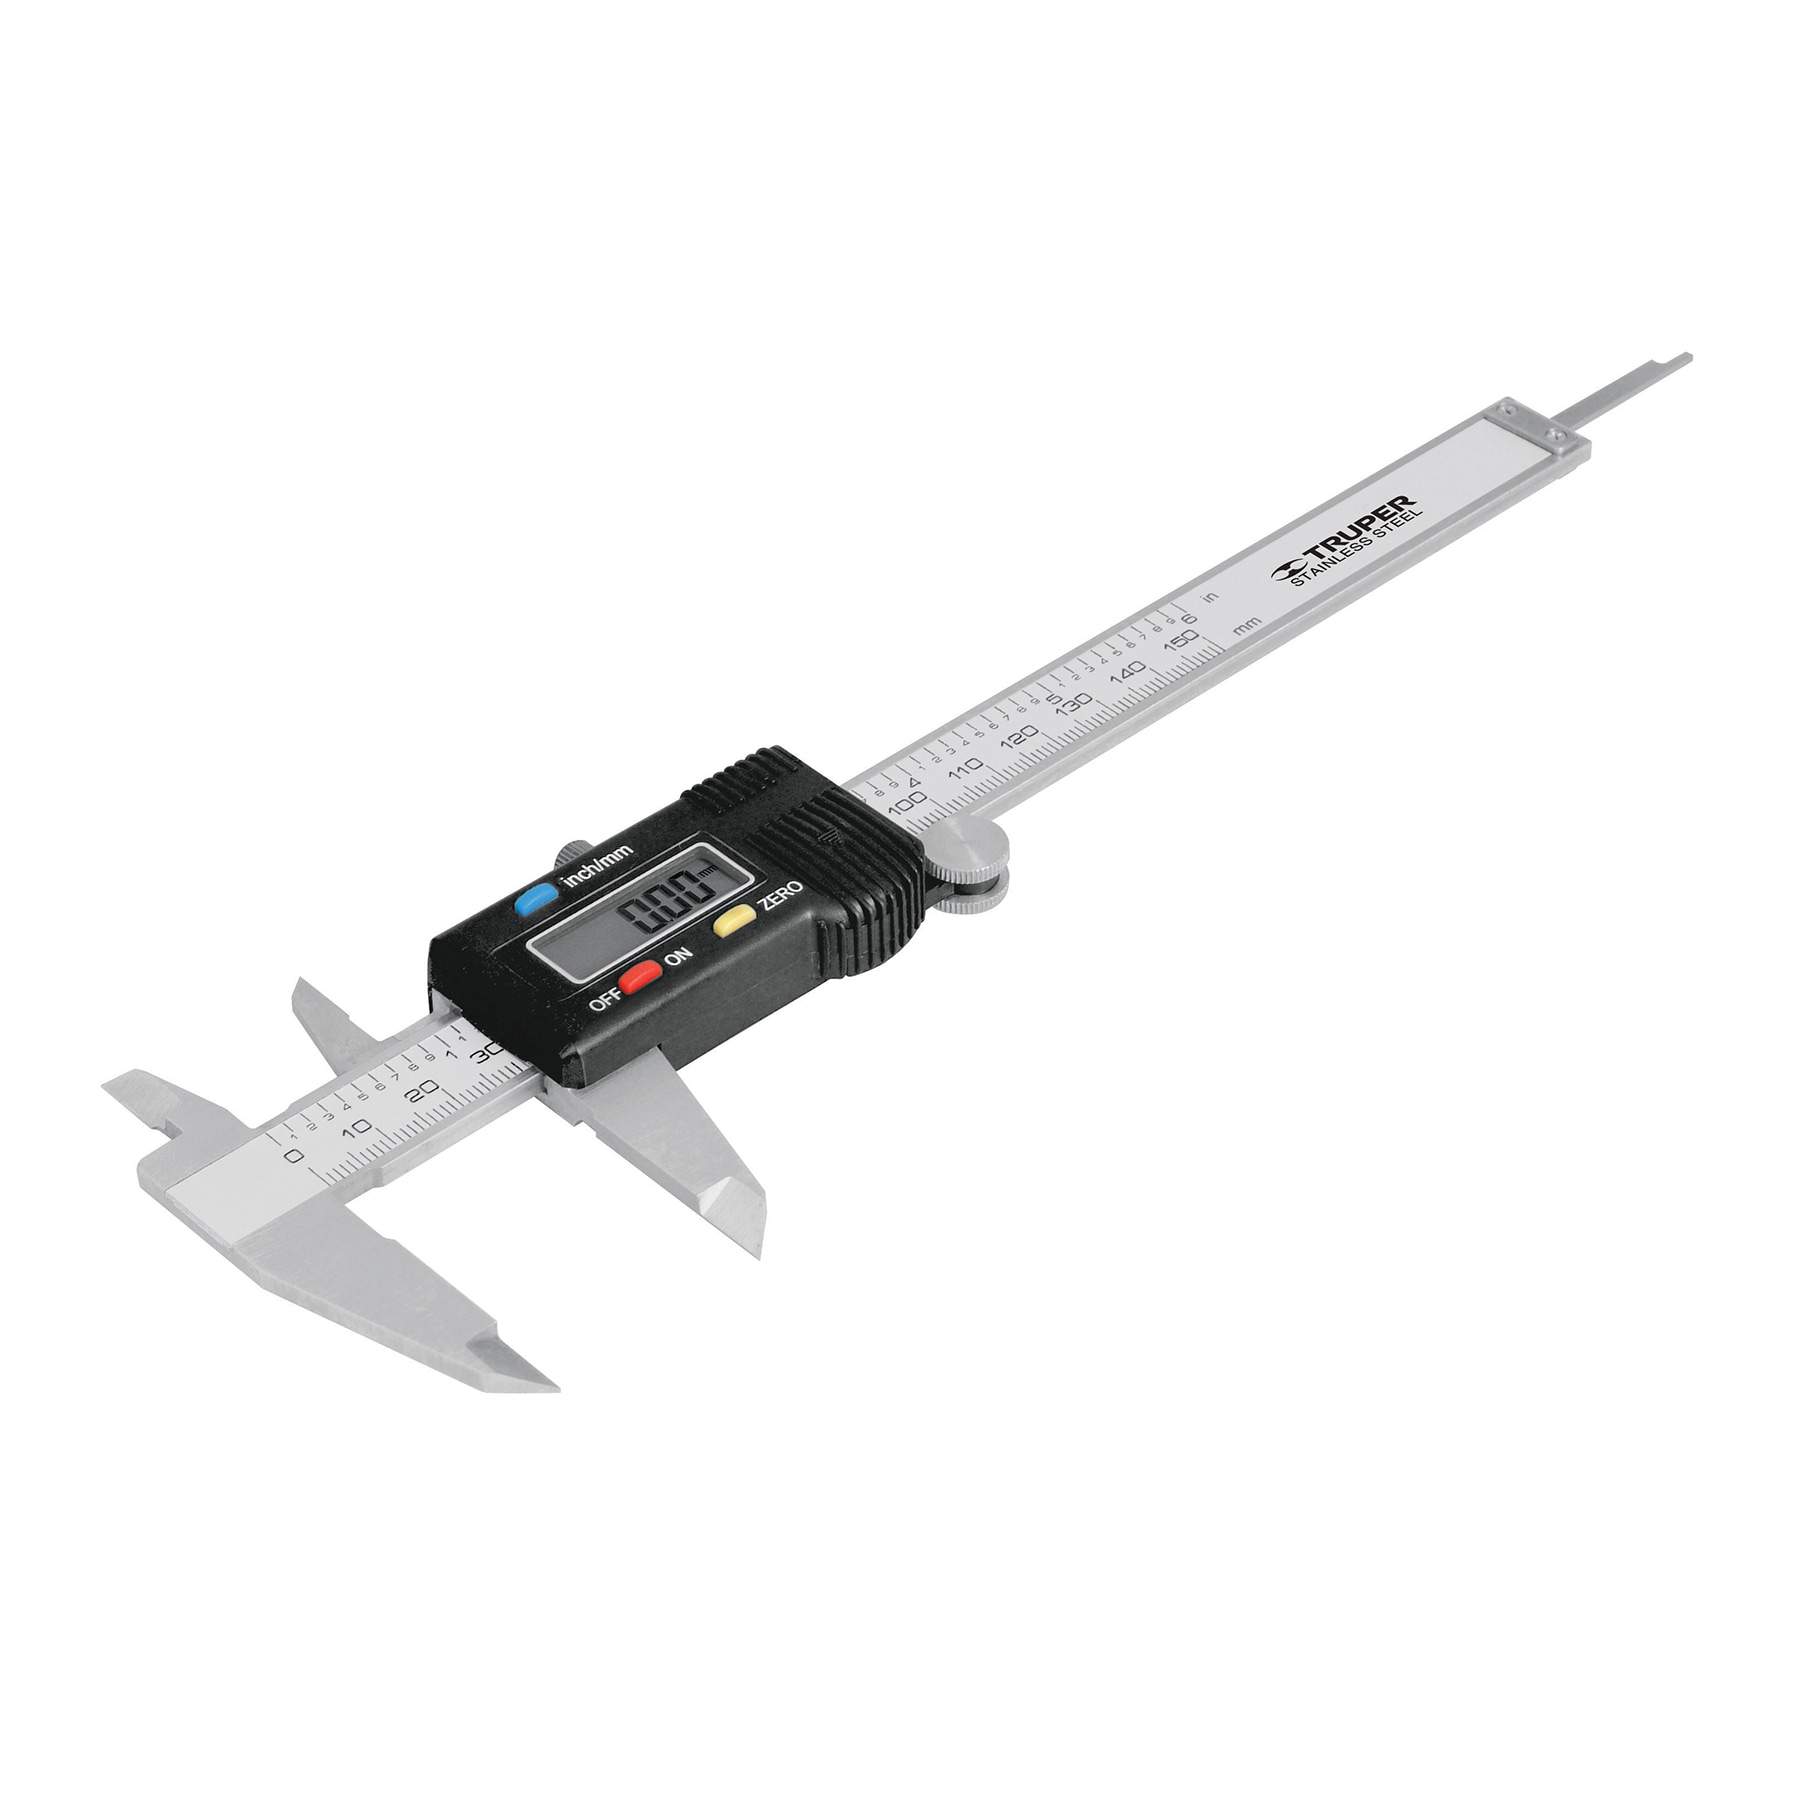 Prestigio componente código Morse Calibrador Pie de Rey Digital de Escala en Pulgadas y Metrico 14388 – La  Red Electrónica